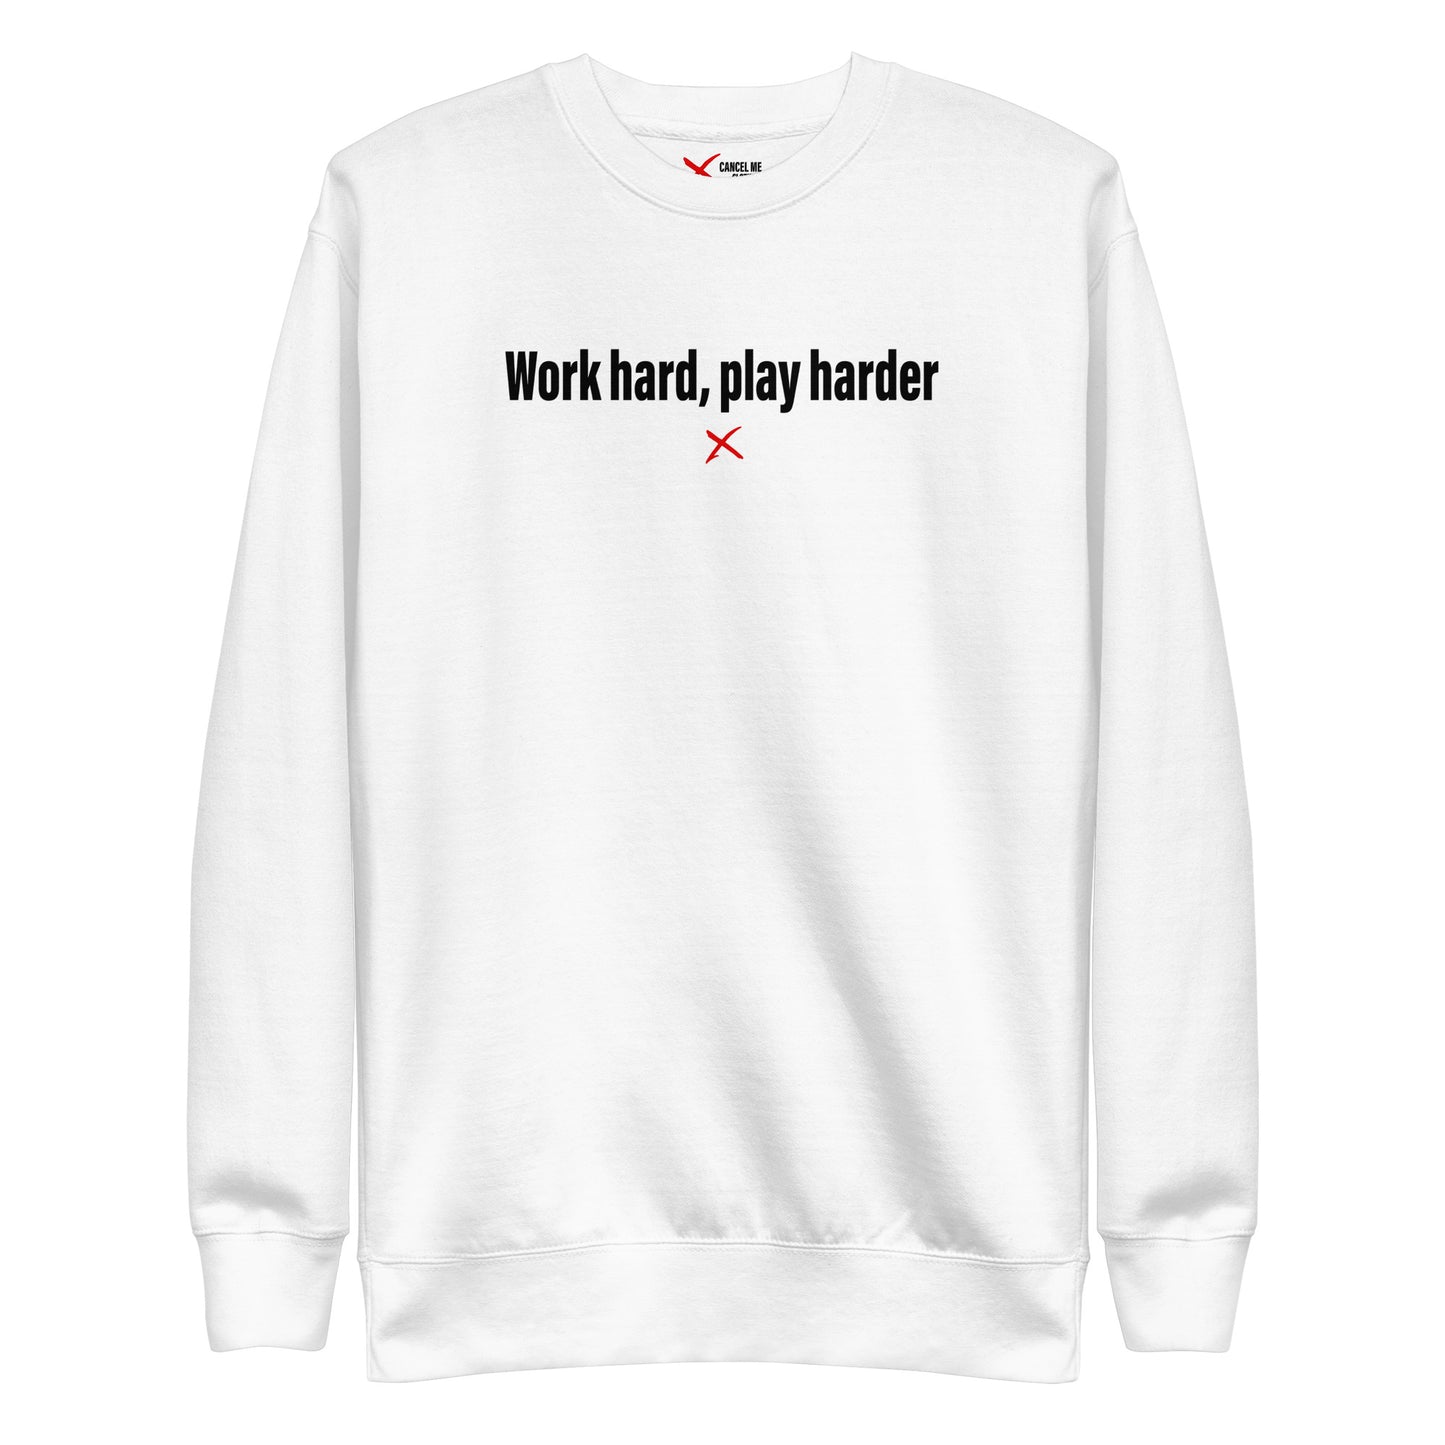 Work hard, play harder - Sweatshirt